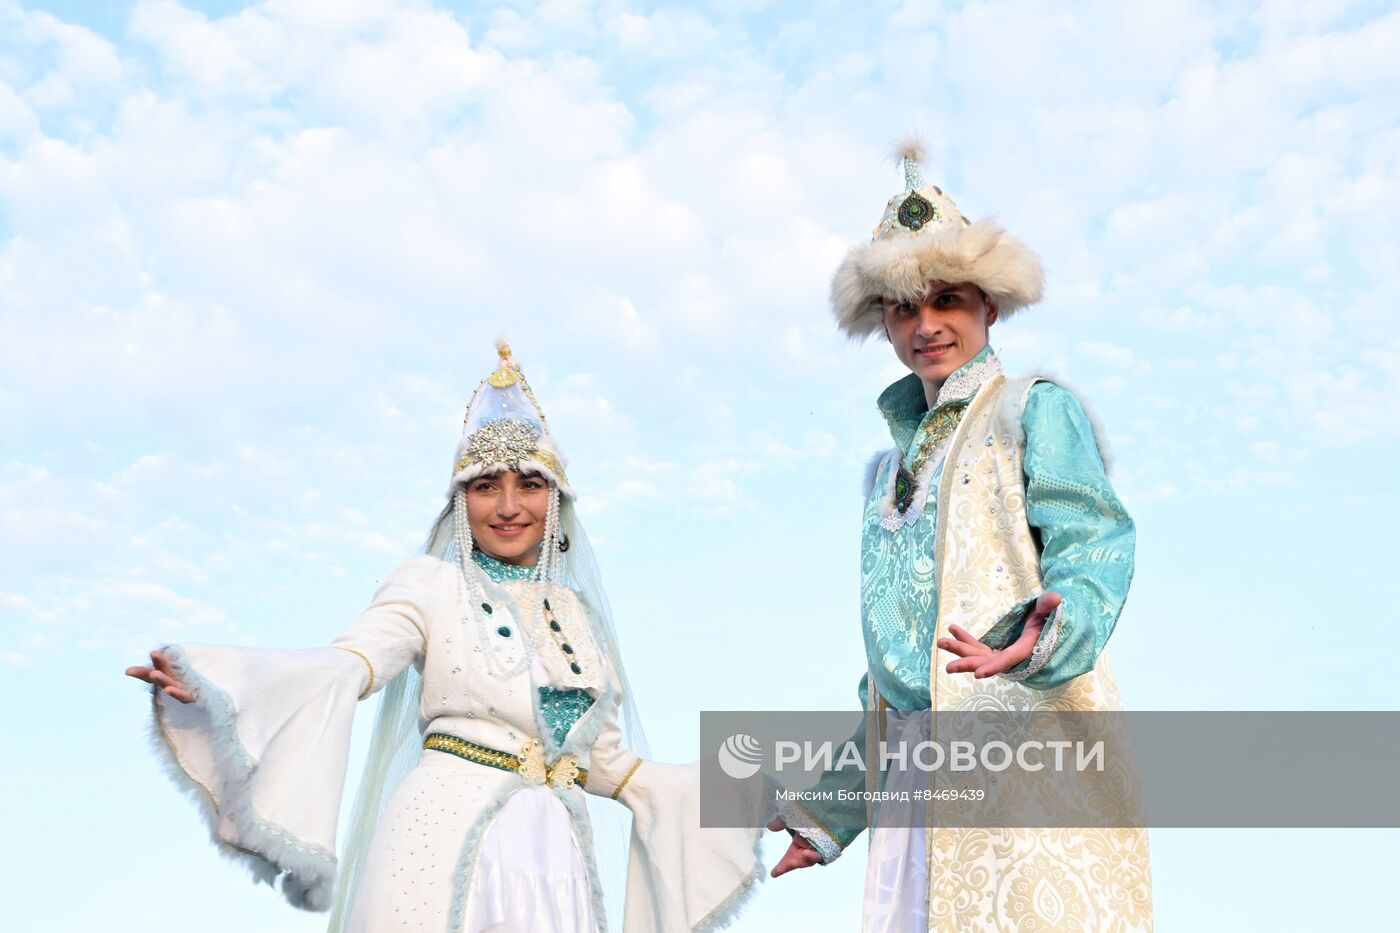 Фестиваль "Курбан-Фест" в Казани